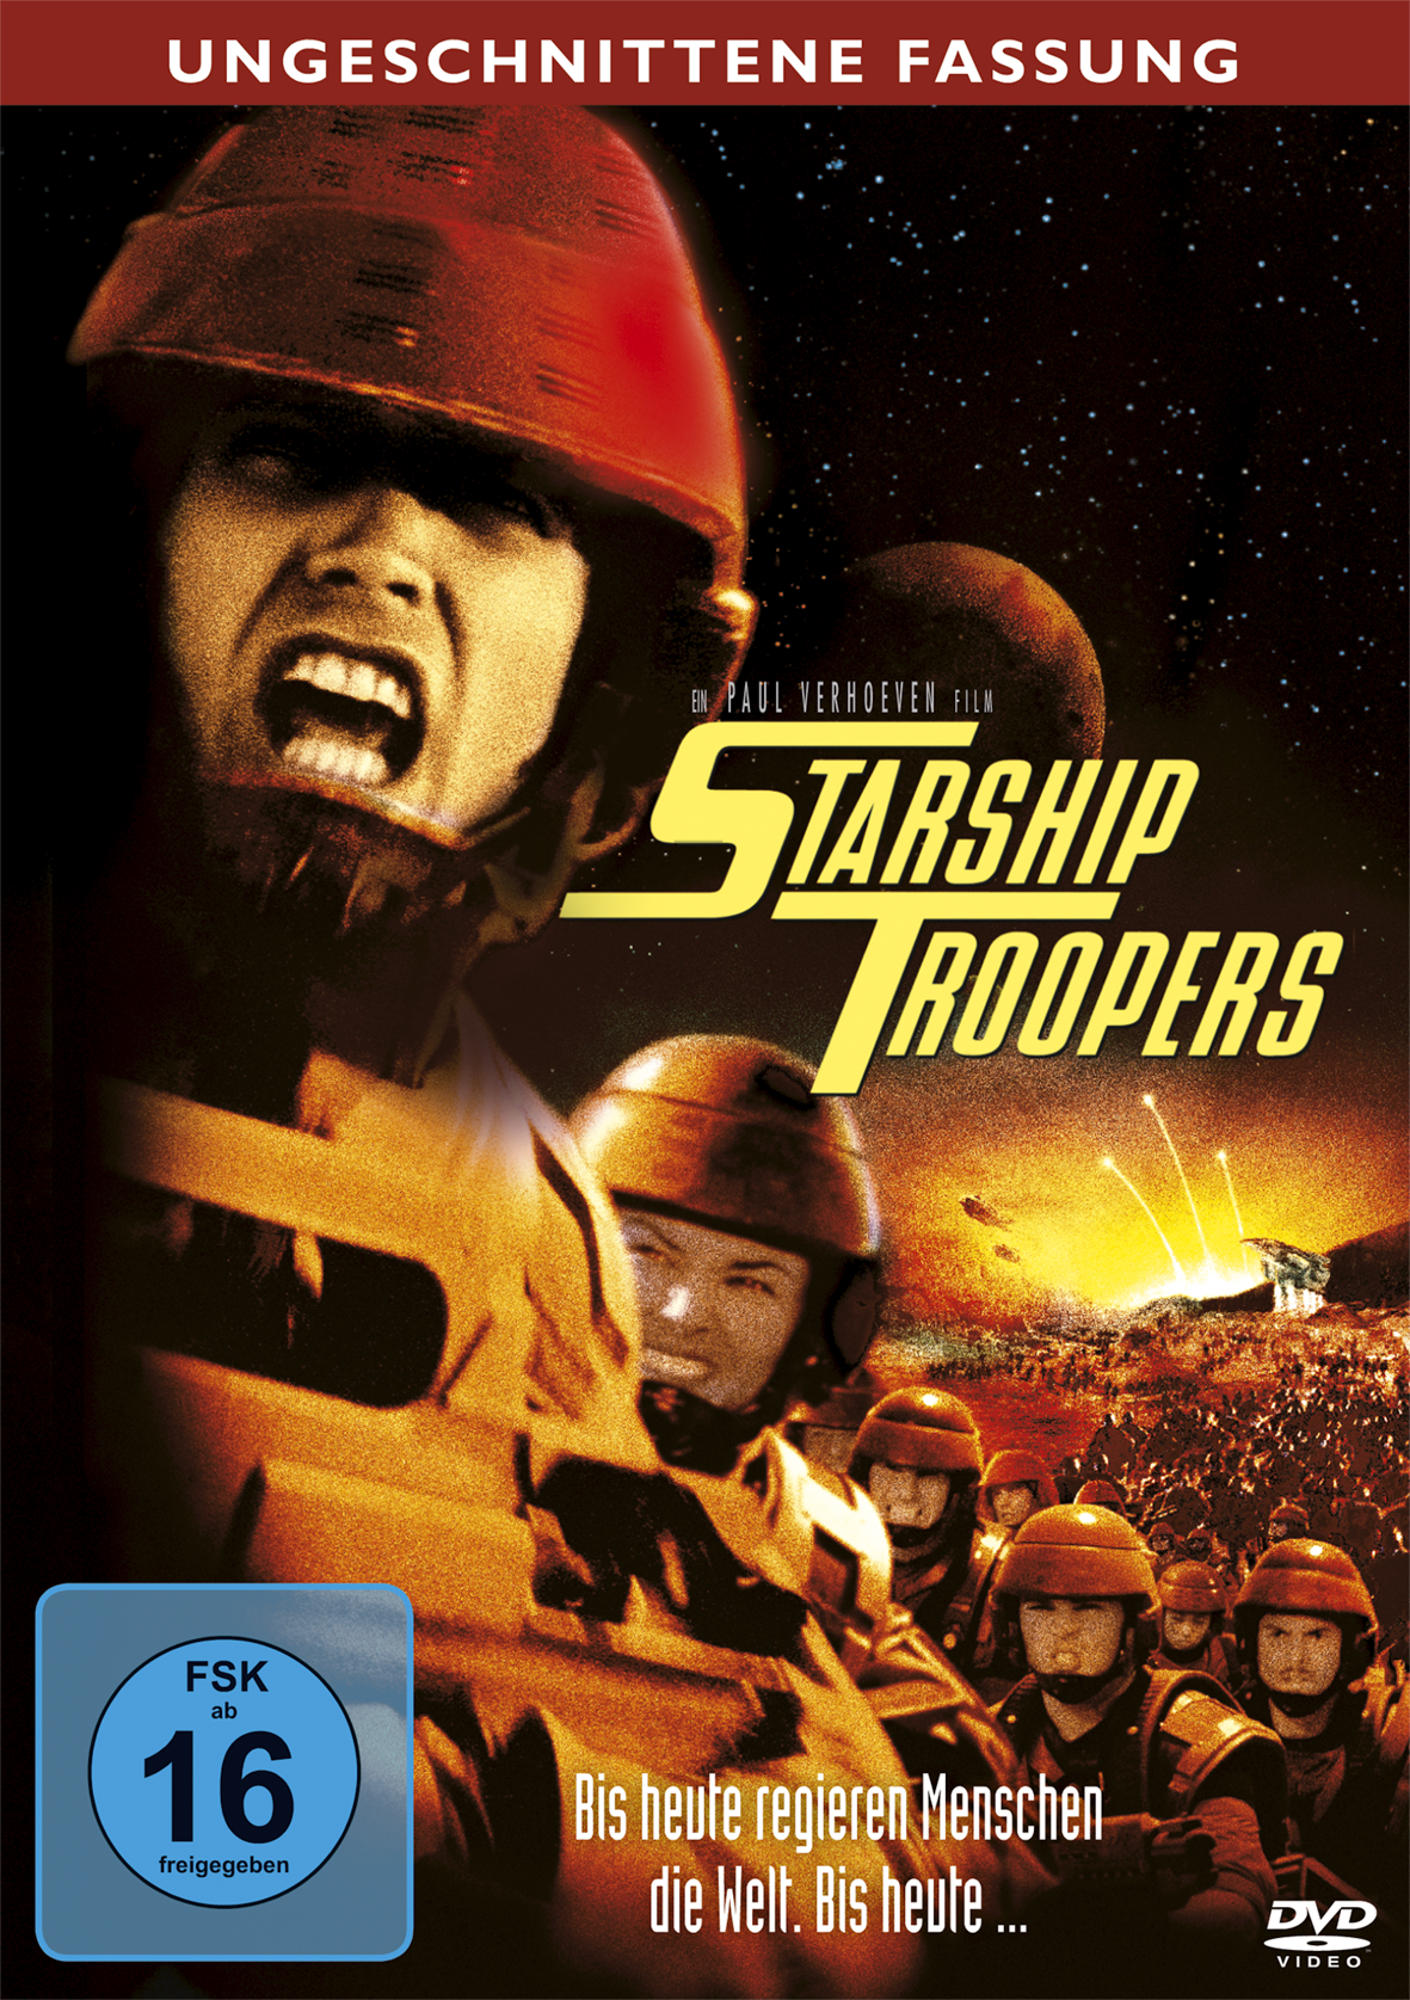 Troopers Starship - Fassung Ungeschnittene DVD